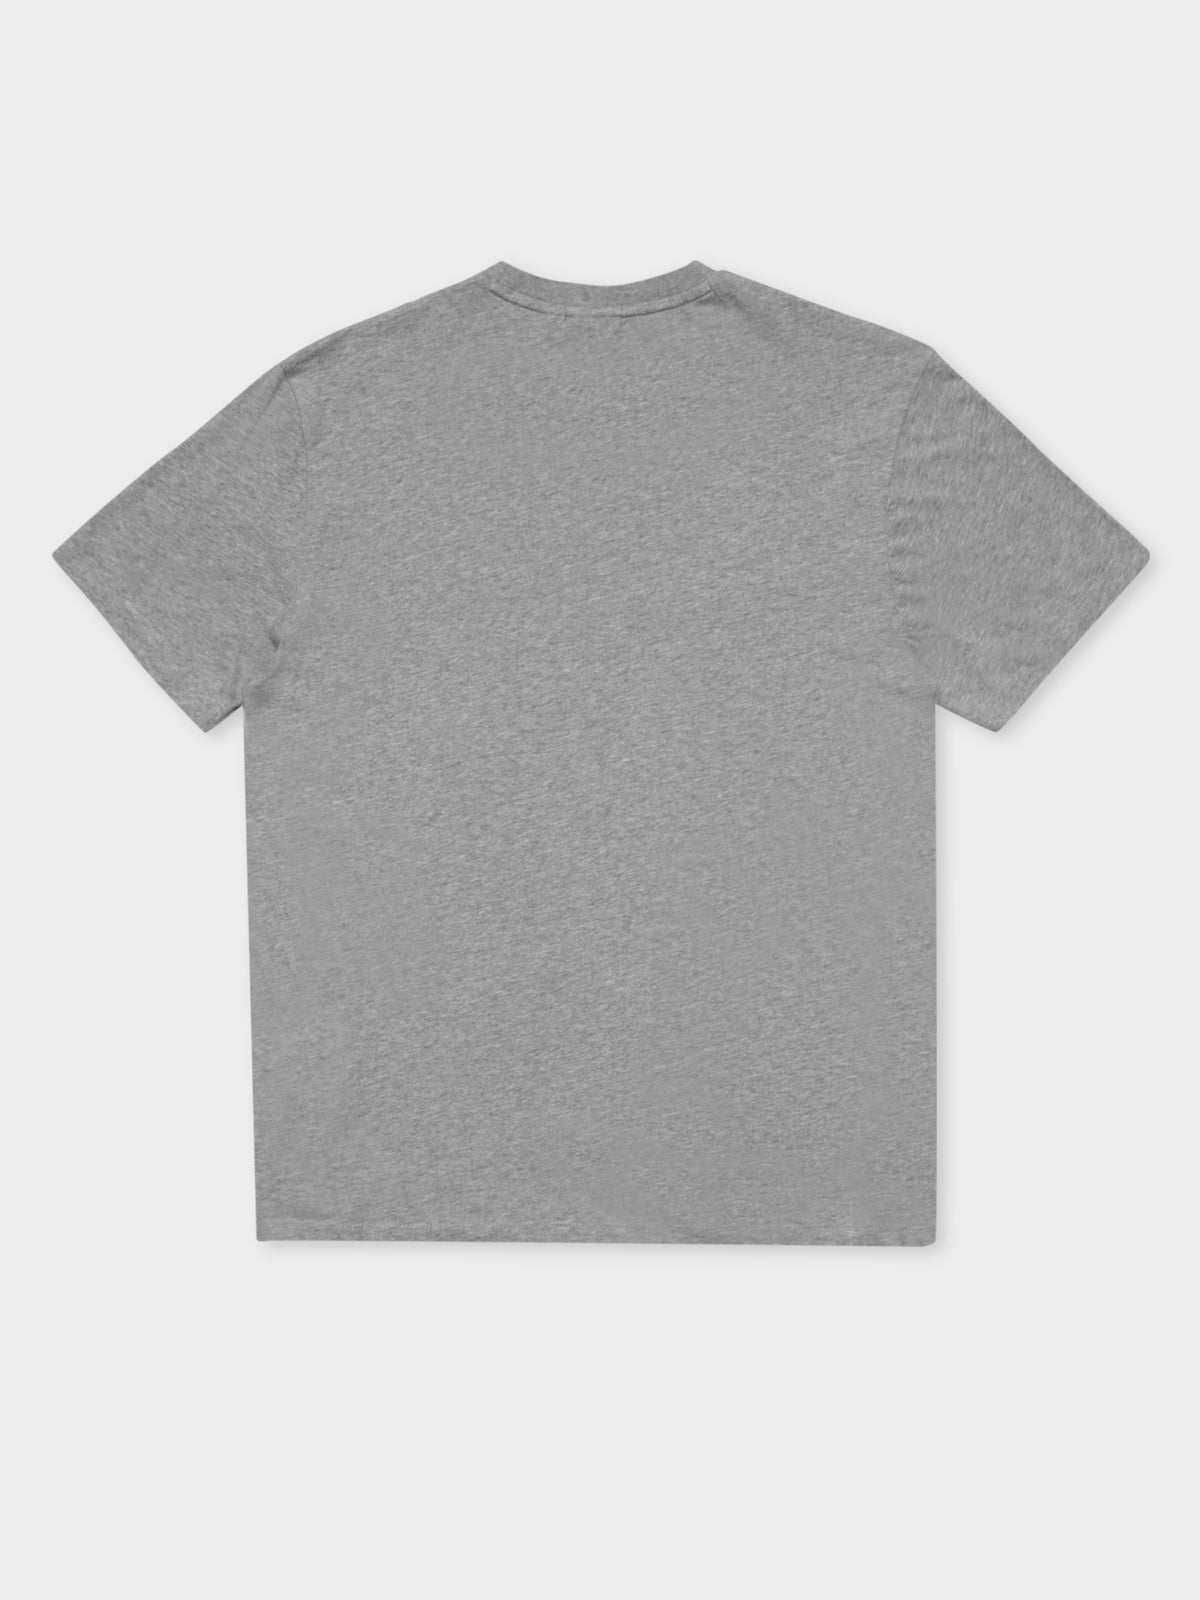 Box Logo T-Shirt in Grey